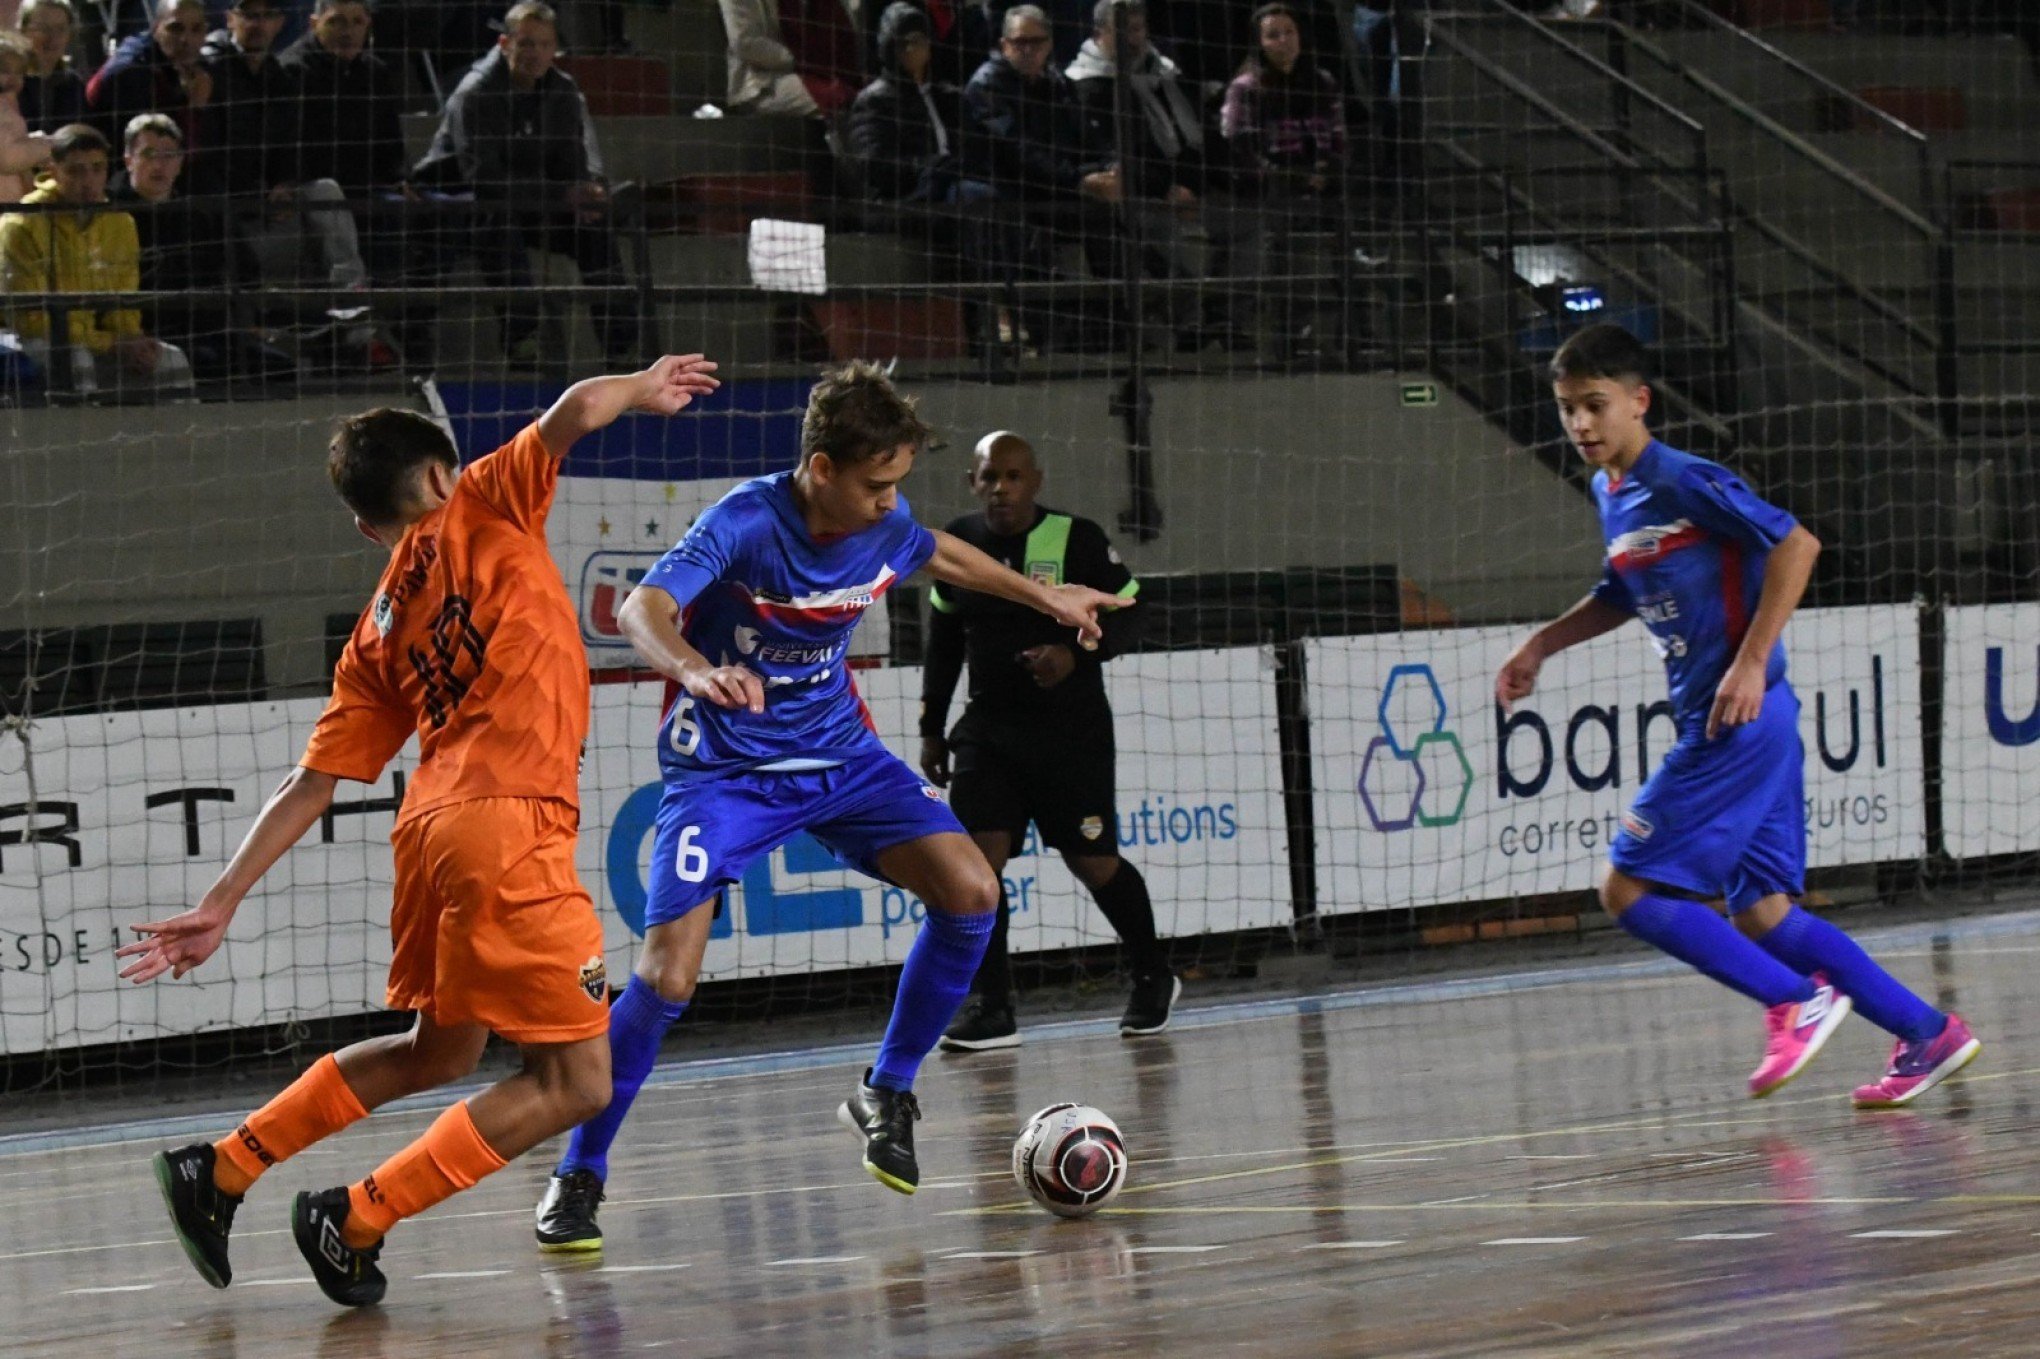 UJR/Feevale/Banrisul enfrenta a ACBF e o Cepe pelo Gauchão de Futsal